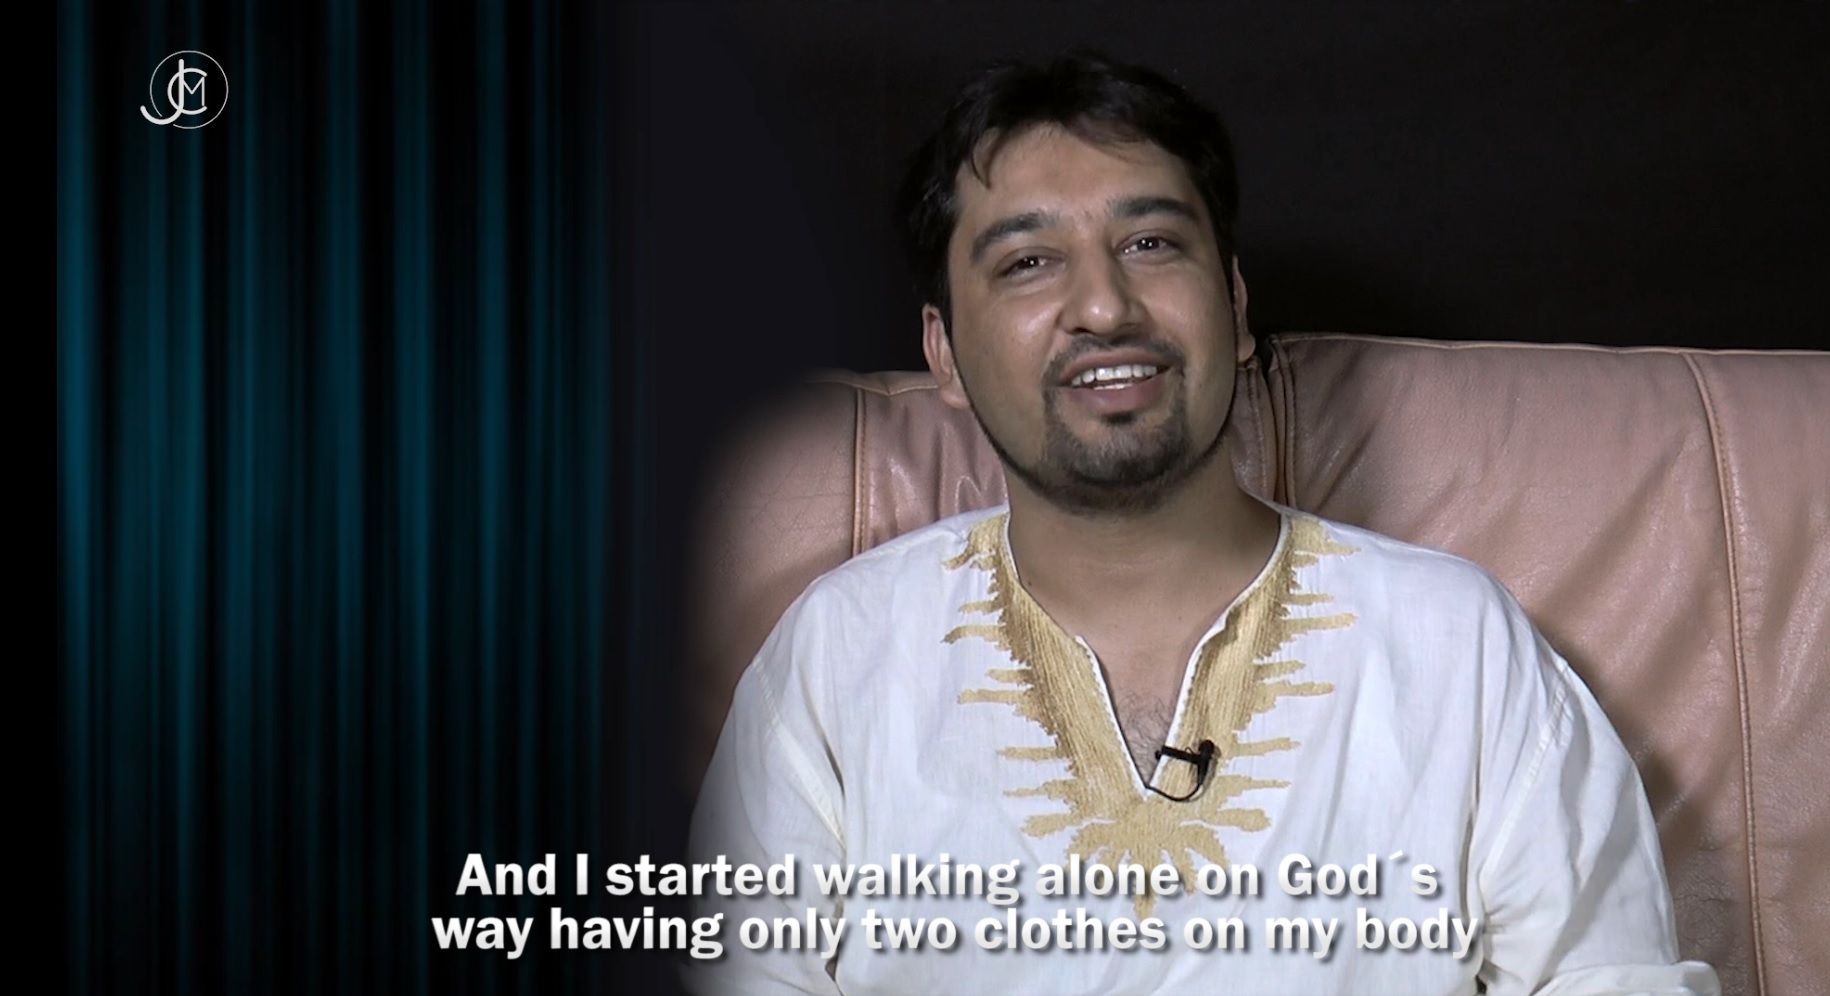 اسلام سے مسیحیت - ایک پاکستانی مسلمان کا کانٹوں سے بھرا سفر - مسیحی راہ پر چلنا